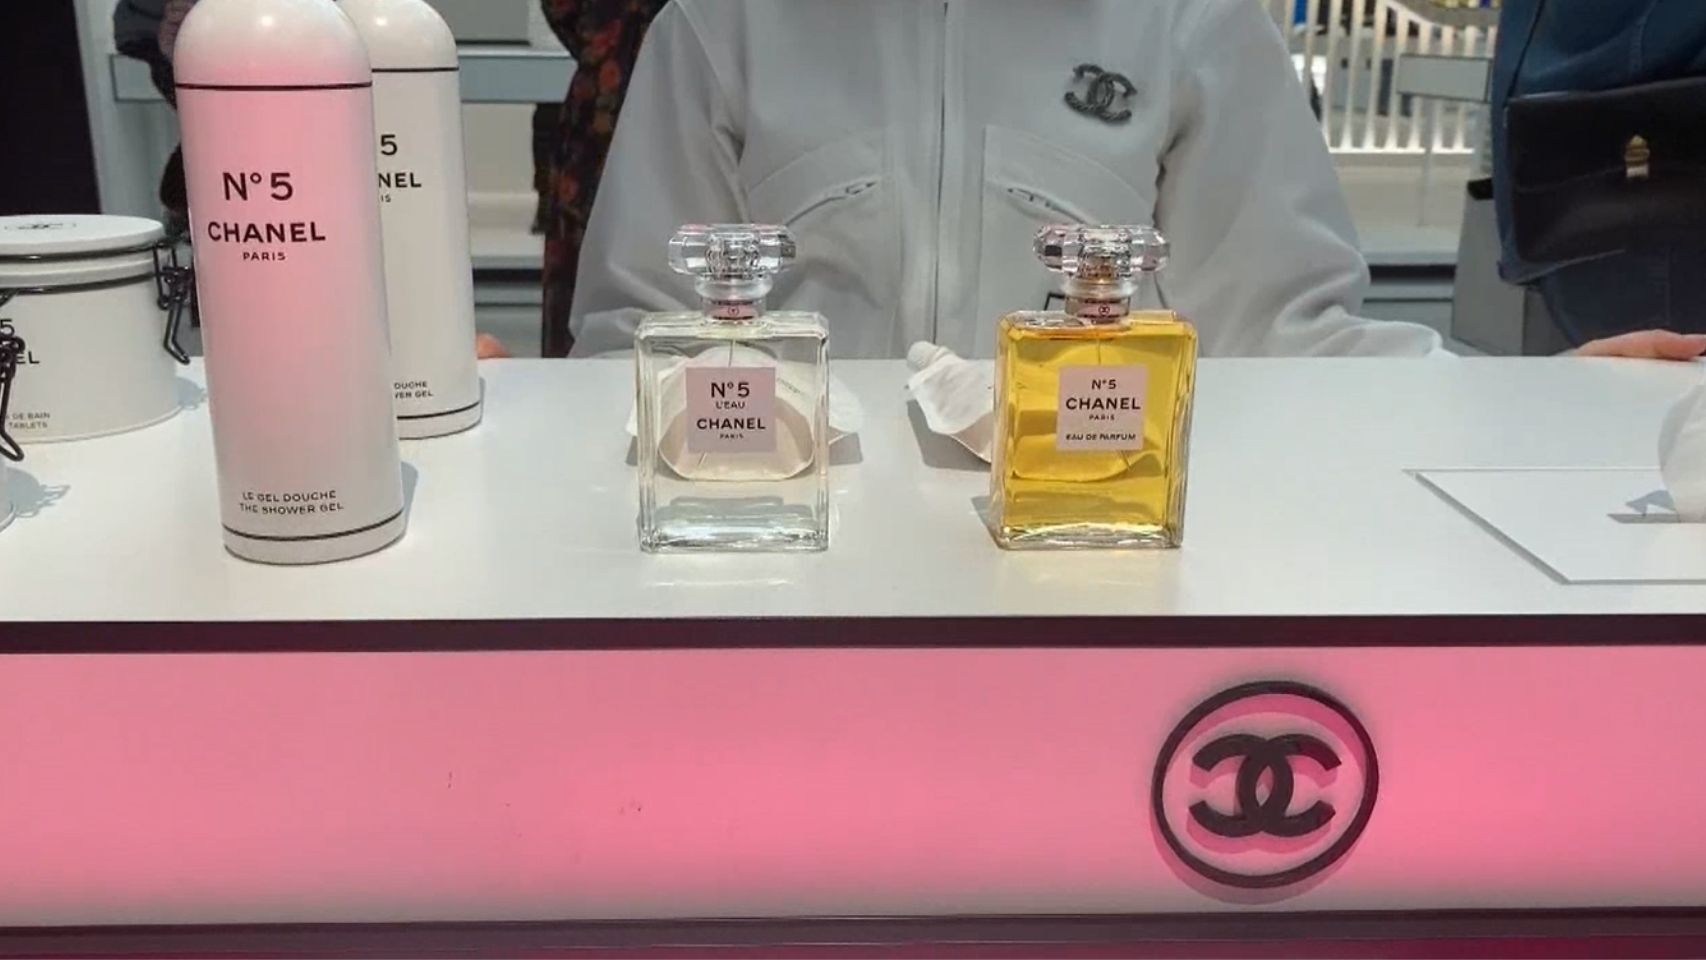 Chanel celebra 100 años del Nº5 con una línea inspirada en objetos cotidianos.